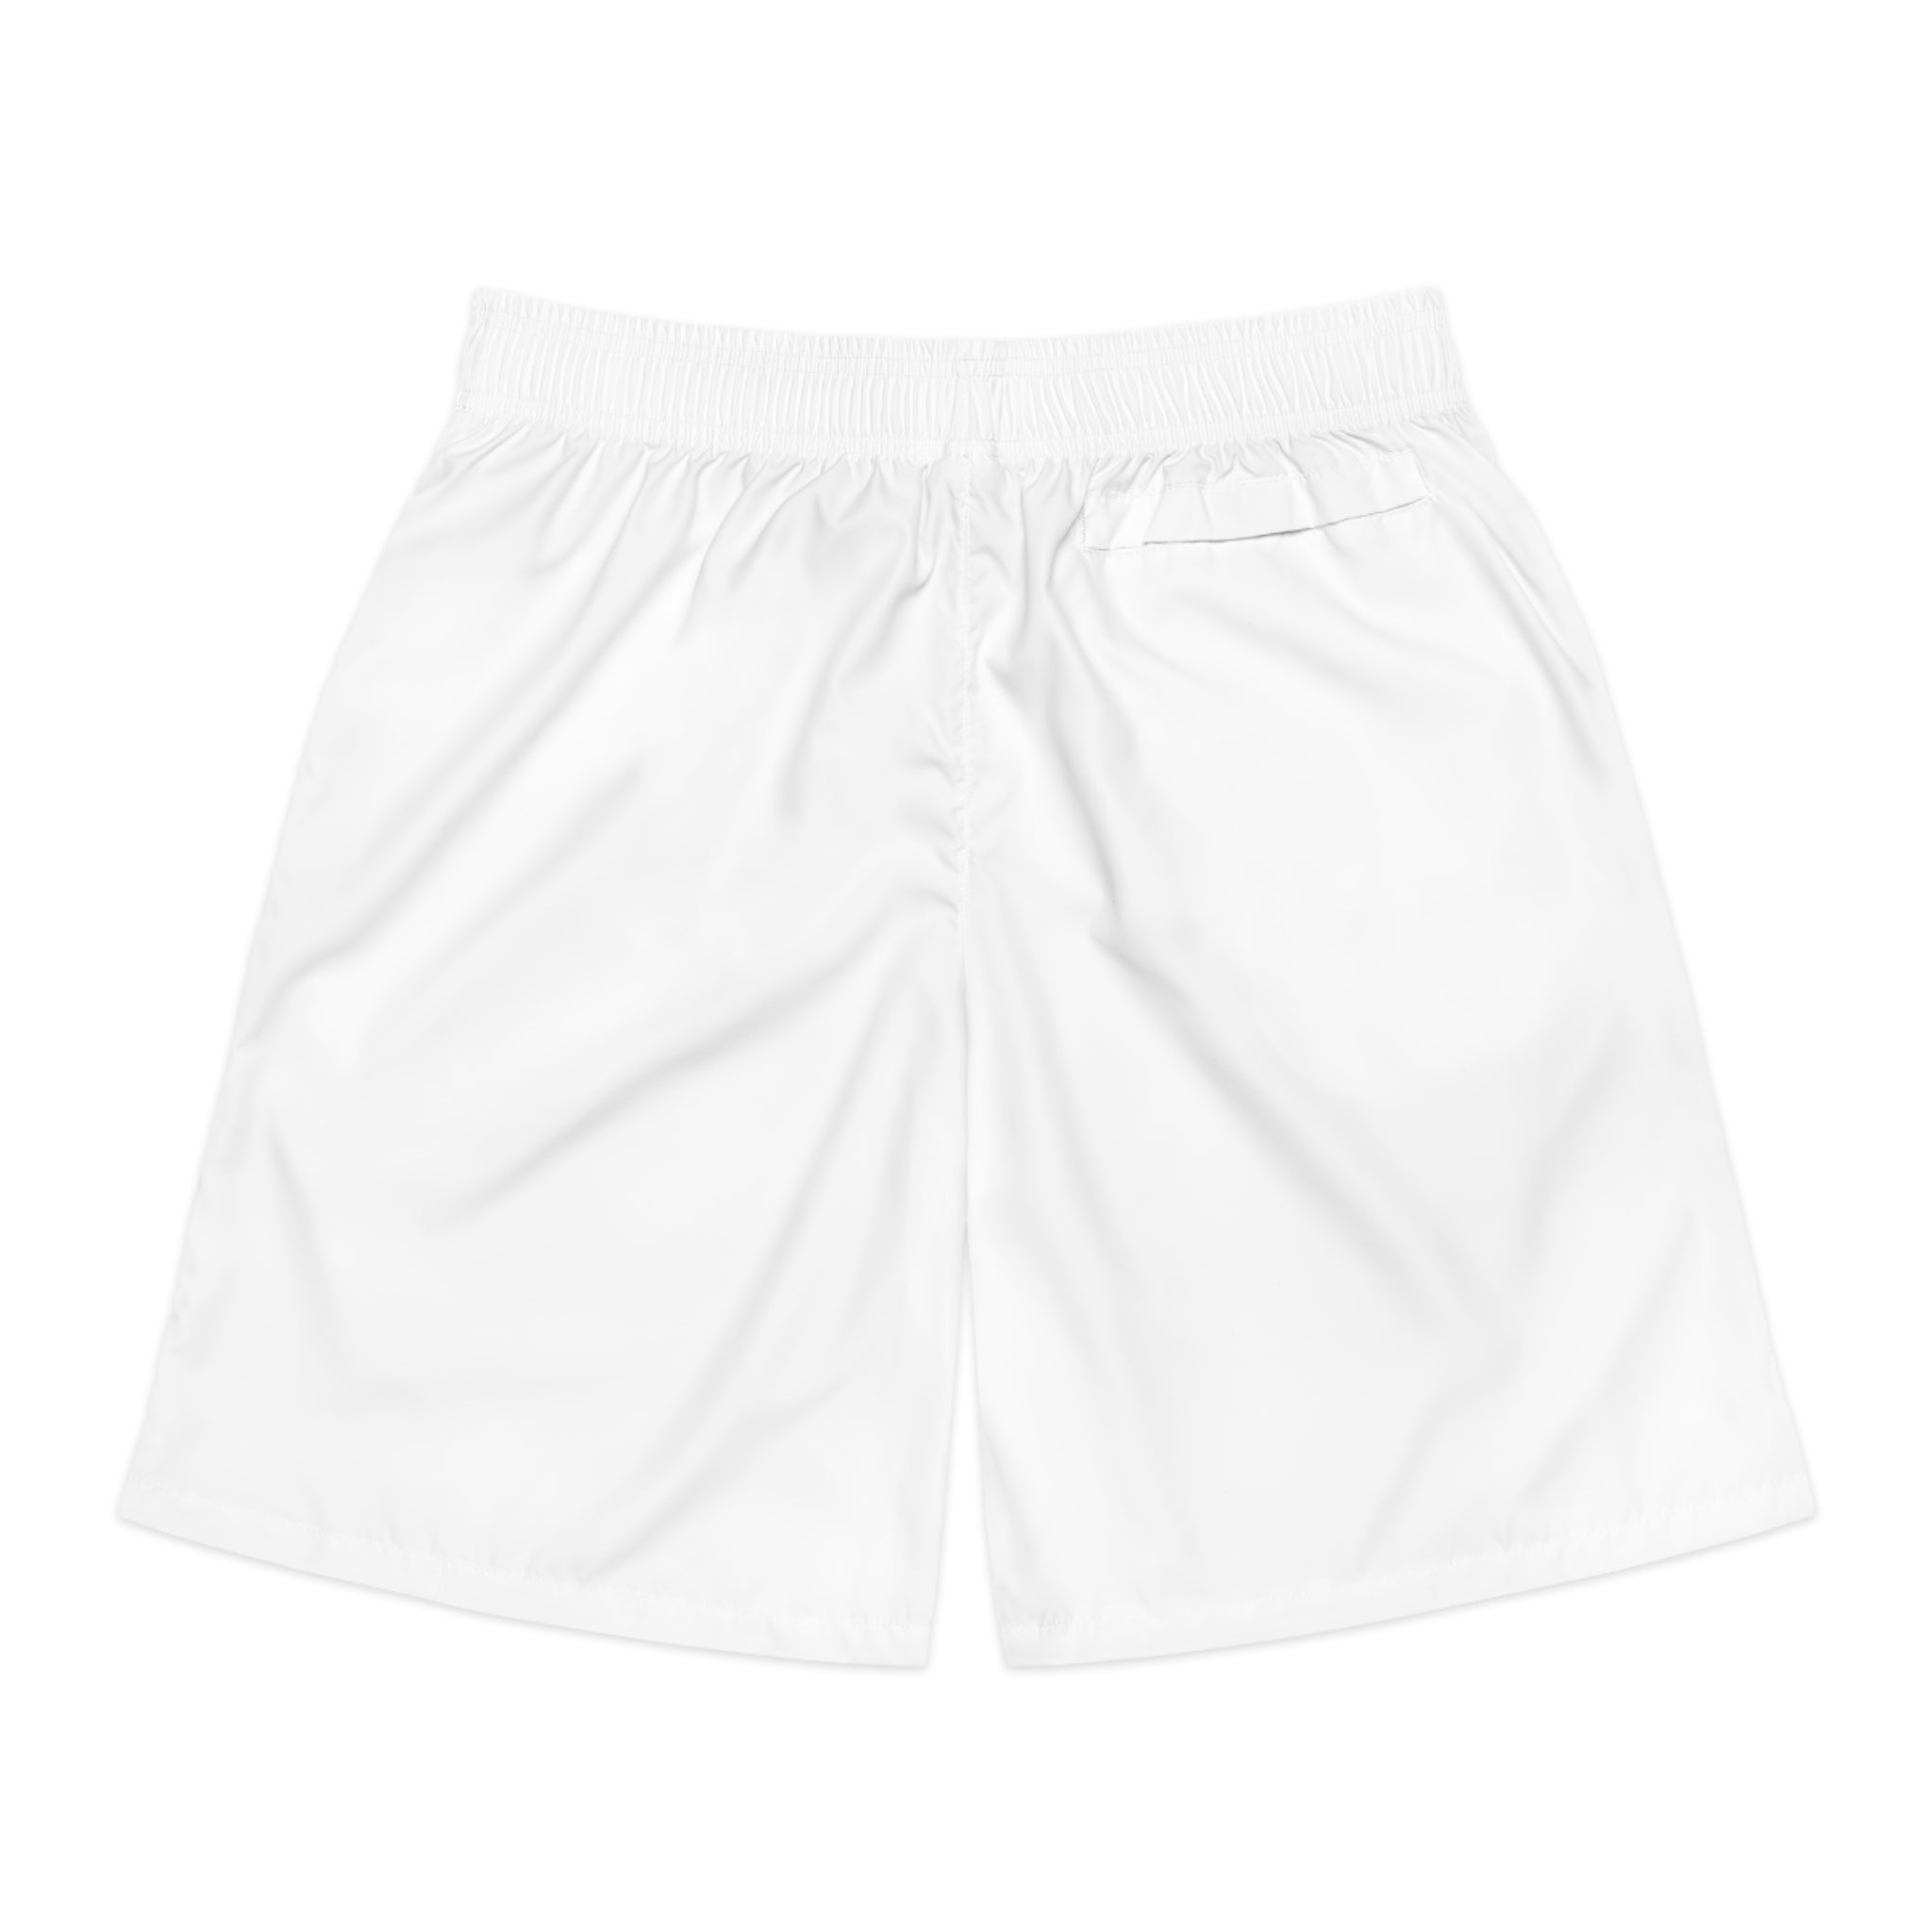 Dragon shorts (White) - Men's Jogger Shorts